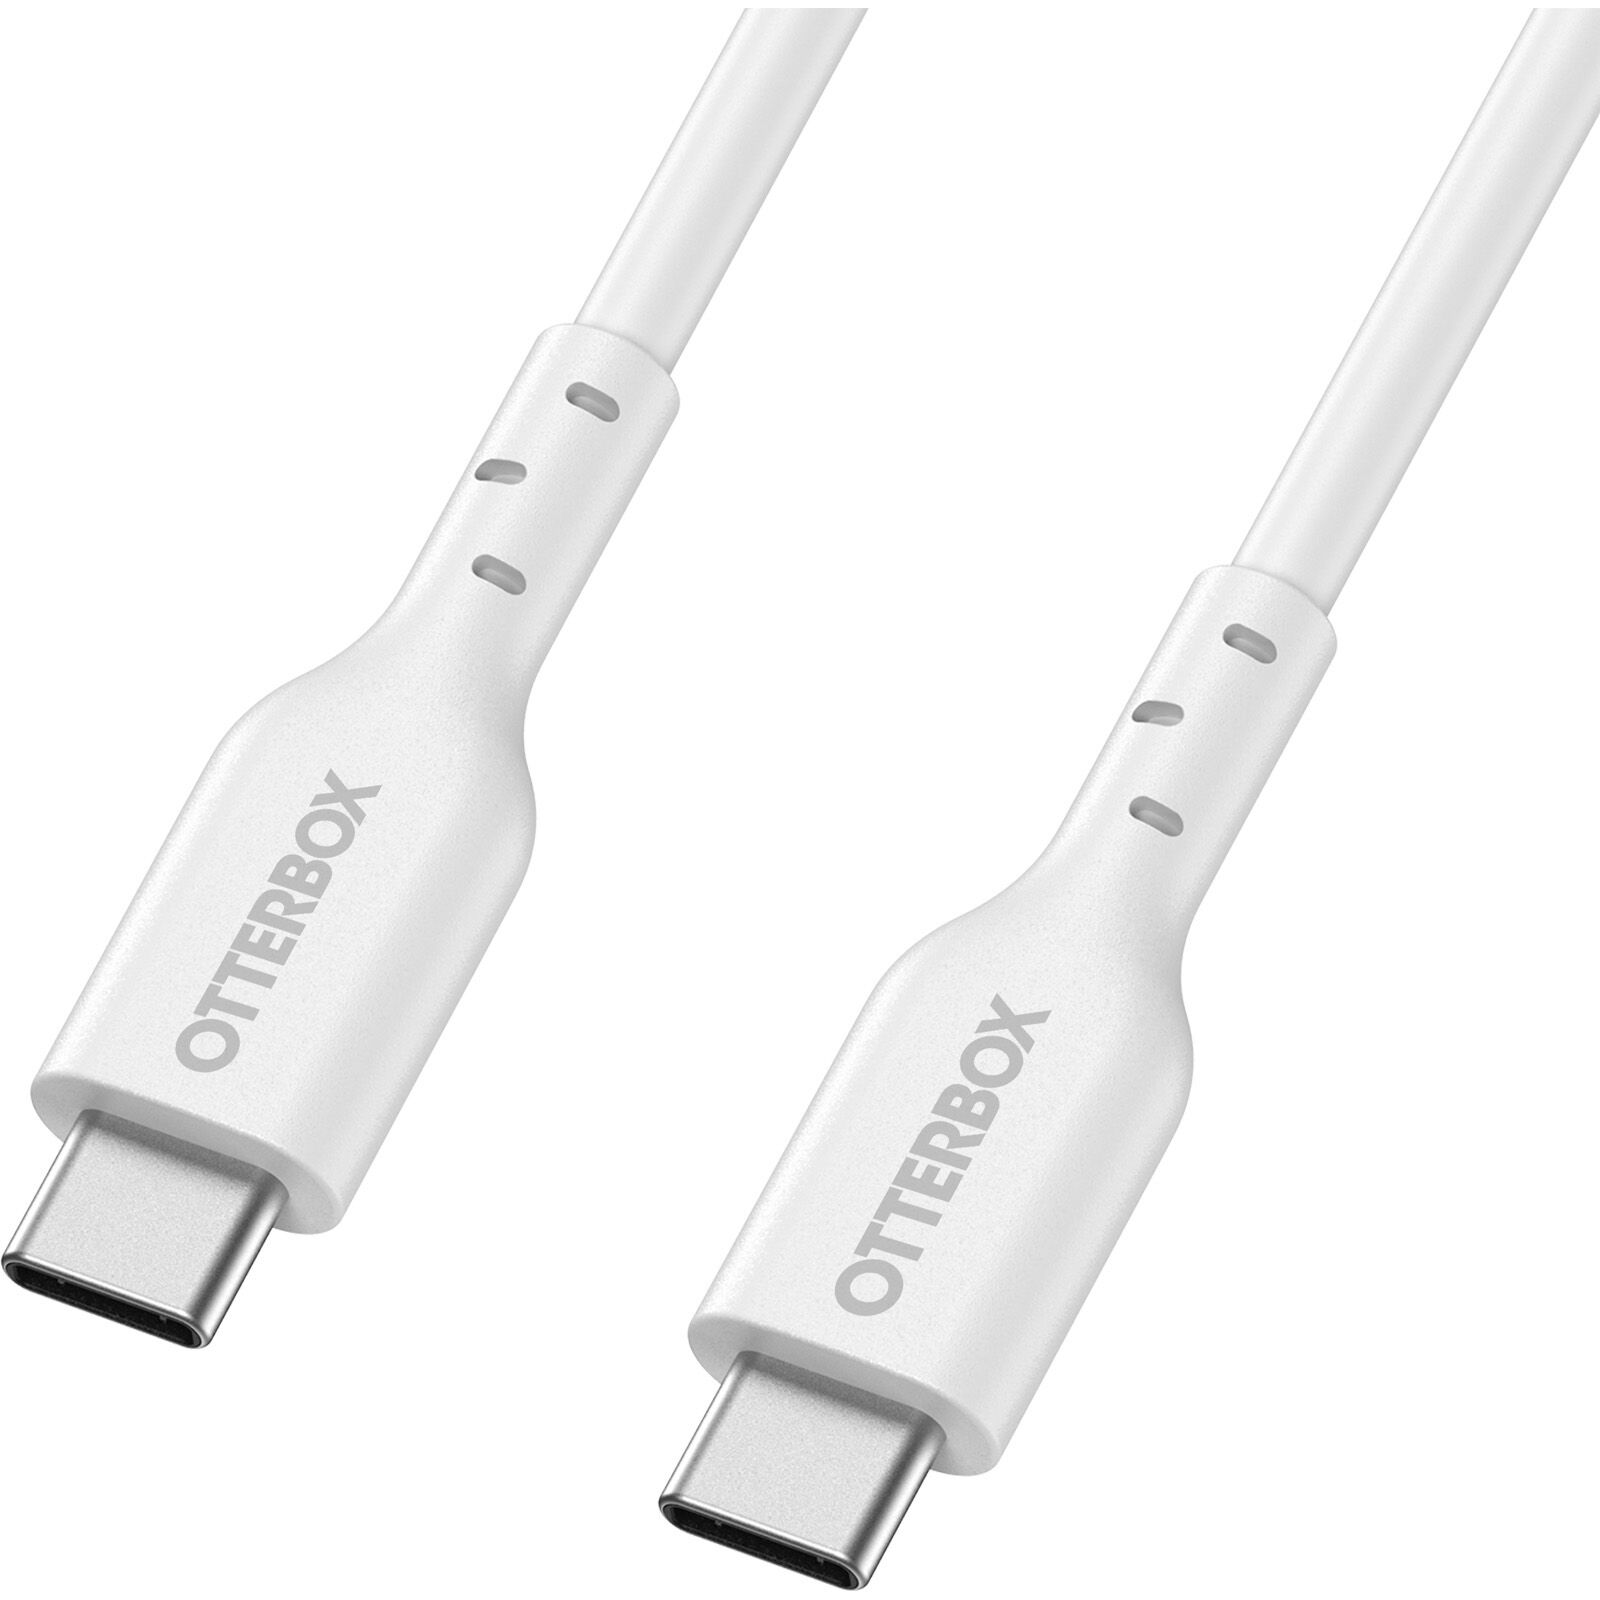 USB-C vers USB-C Câble 2 mètres Standard Fast Charge, blanc